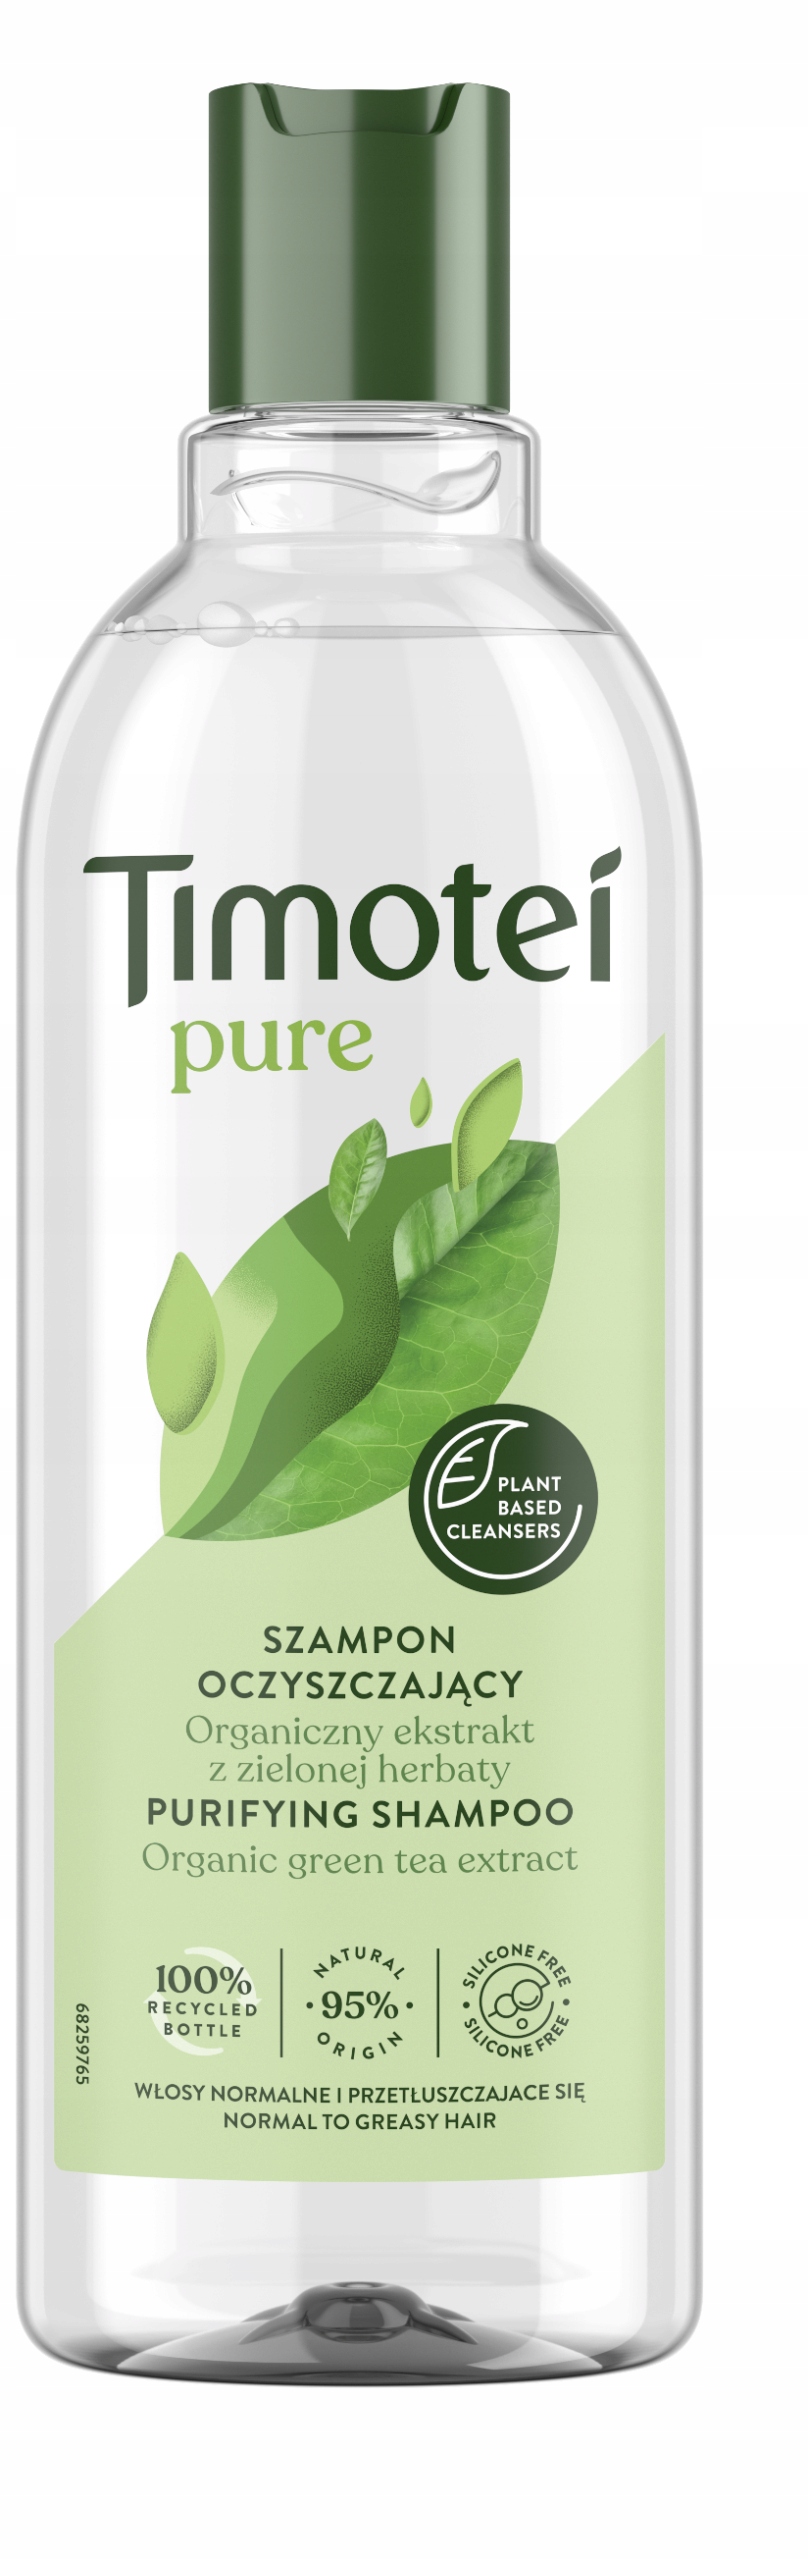 szampon timotei z zielonej herbaty